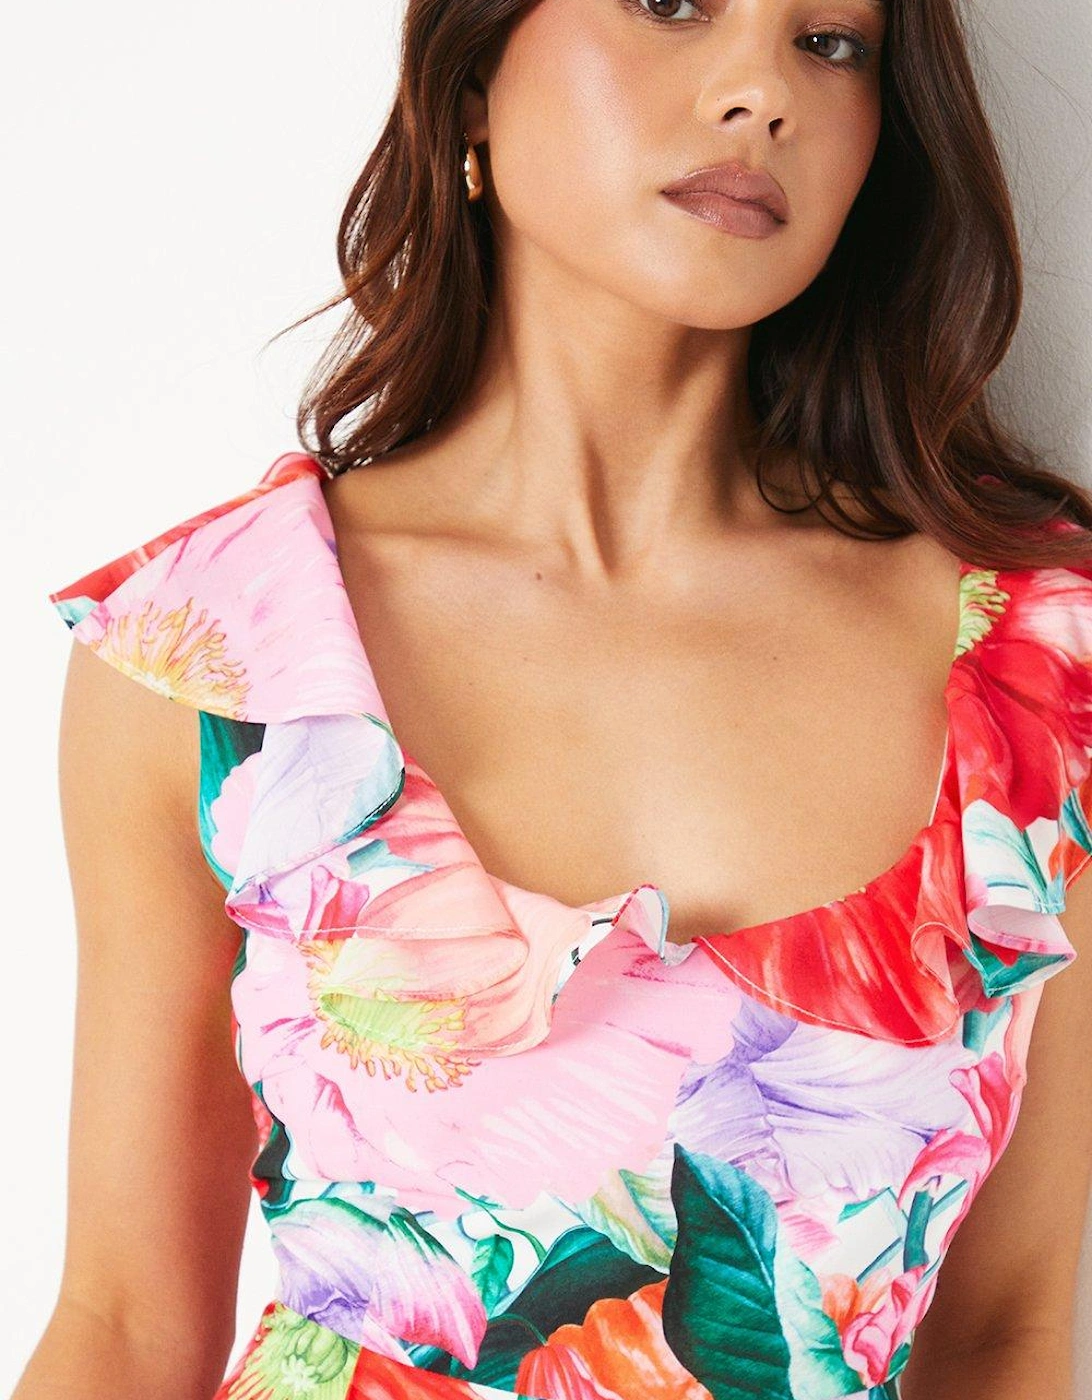 Petite Ruffle Shoulder Midi Dress In Floral Print